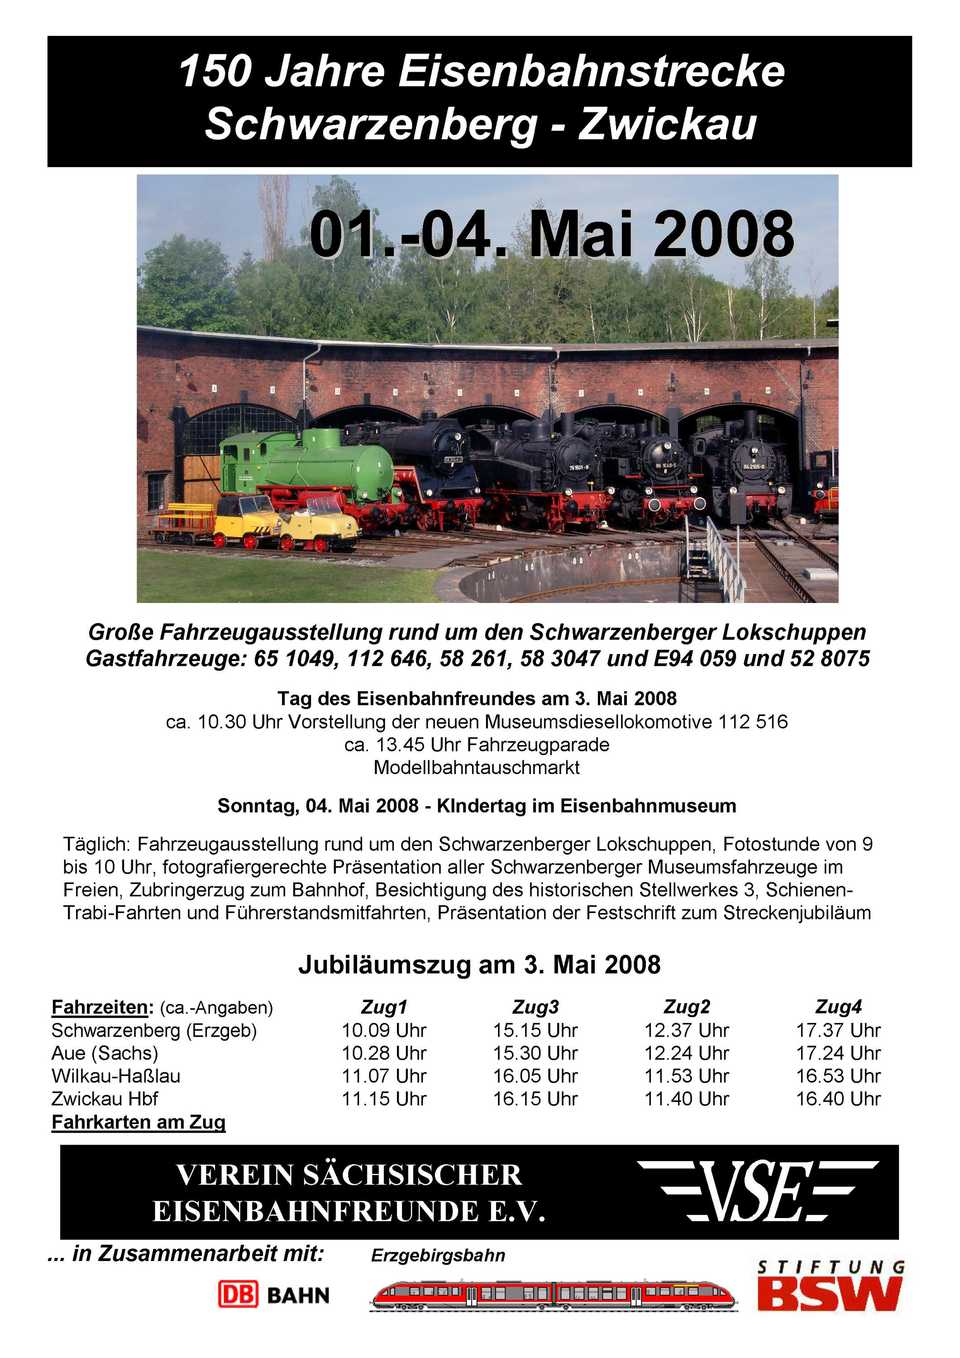 Veranstaltungsankündigung: 1. bis 4. Mai 2008 „150 Jahre Eisenbahnstrecke Schwarzenberg - Zwickau“